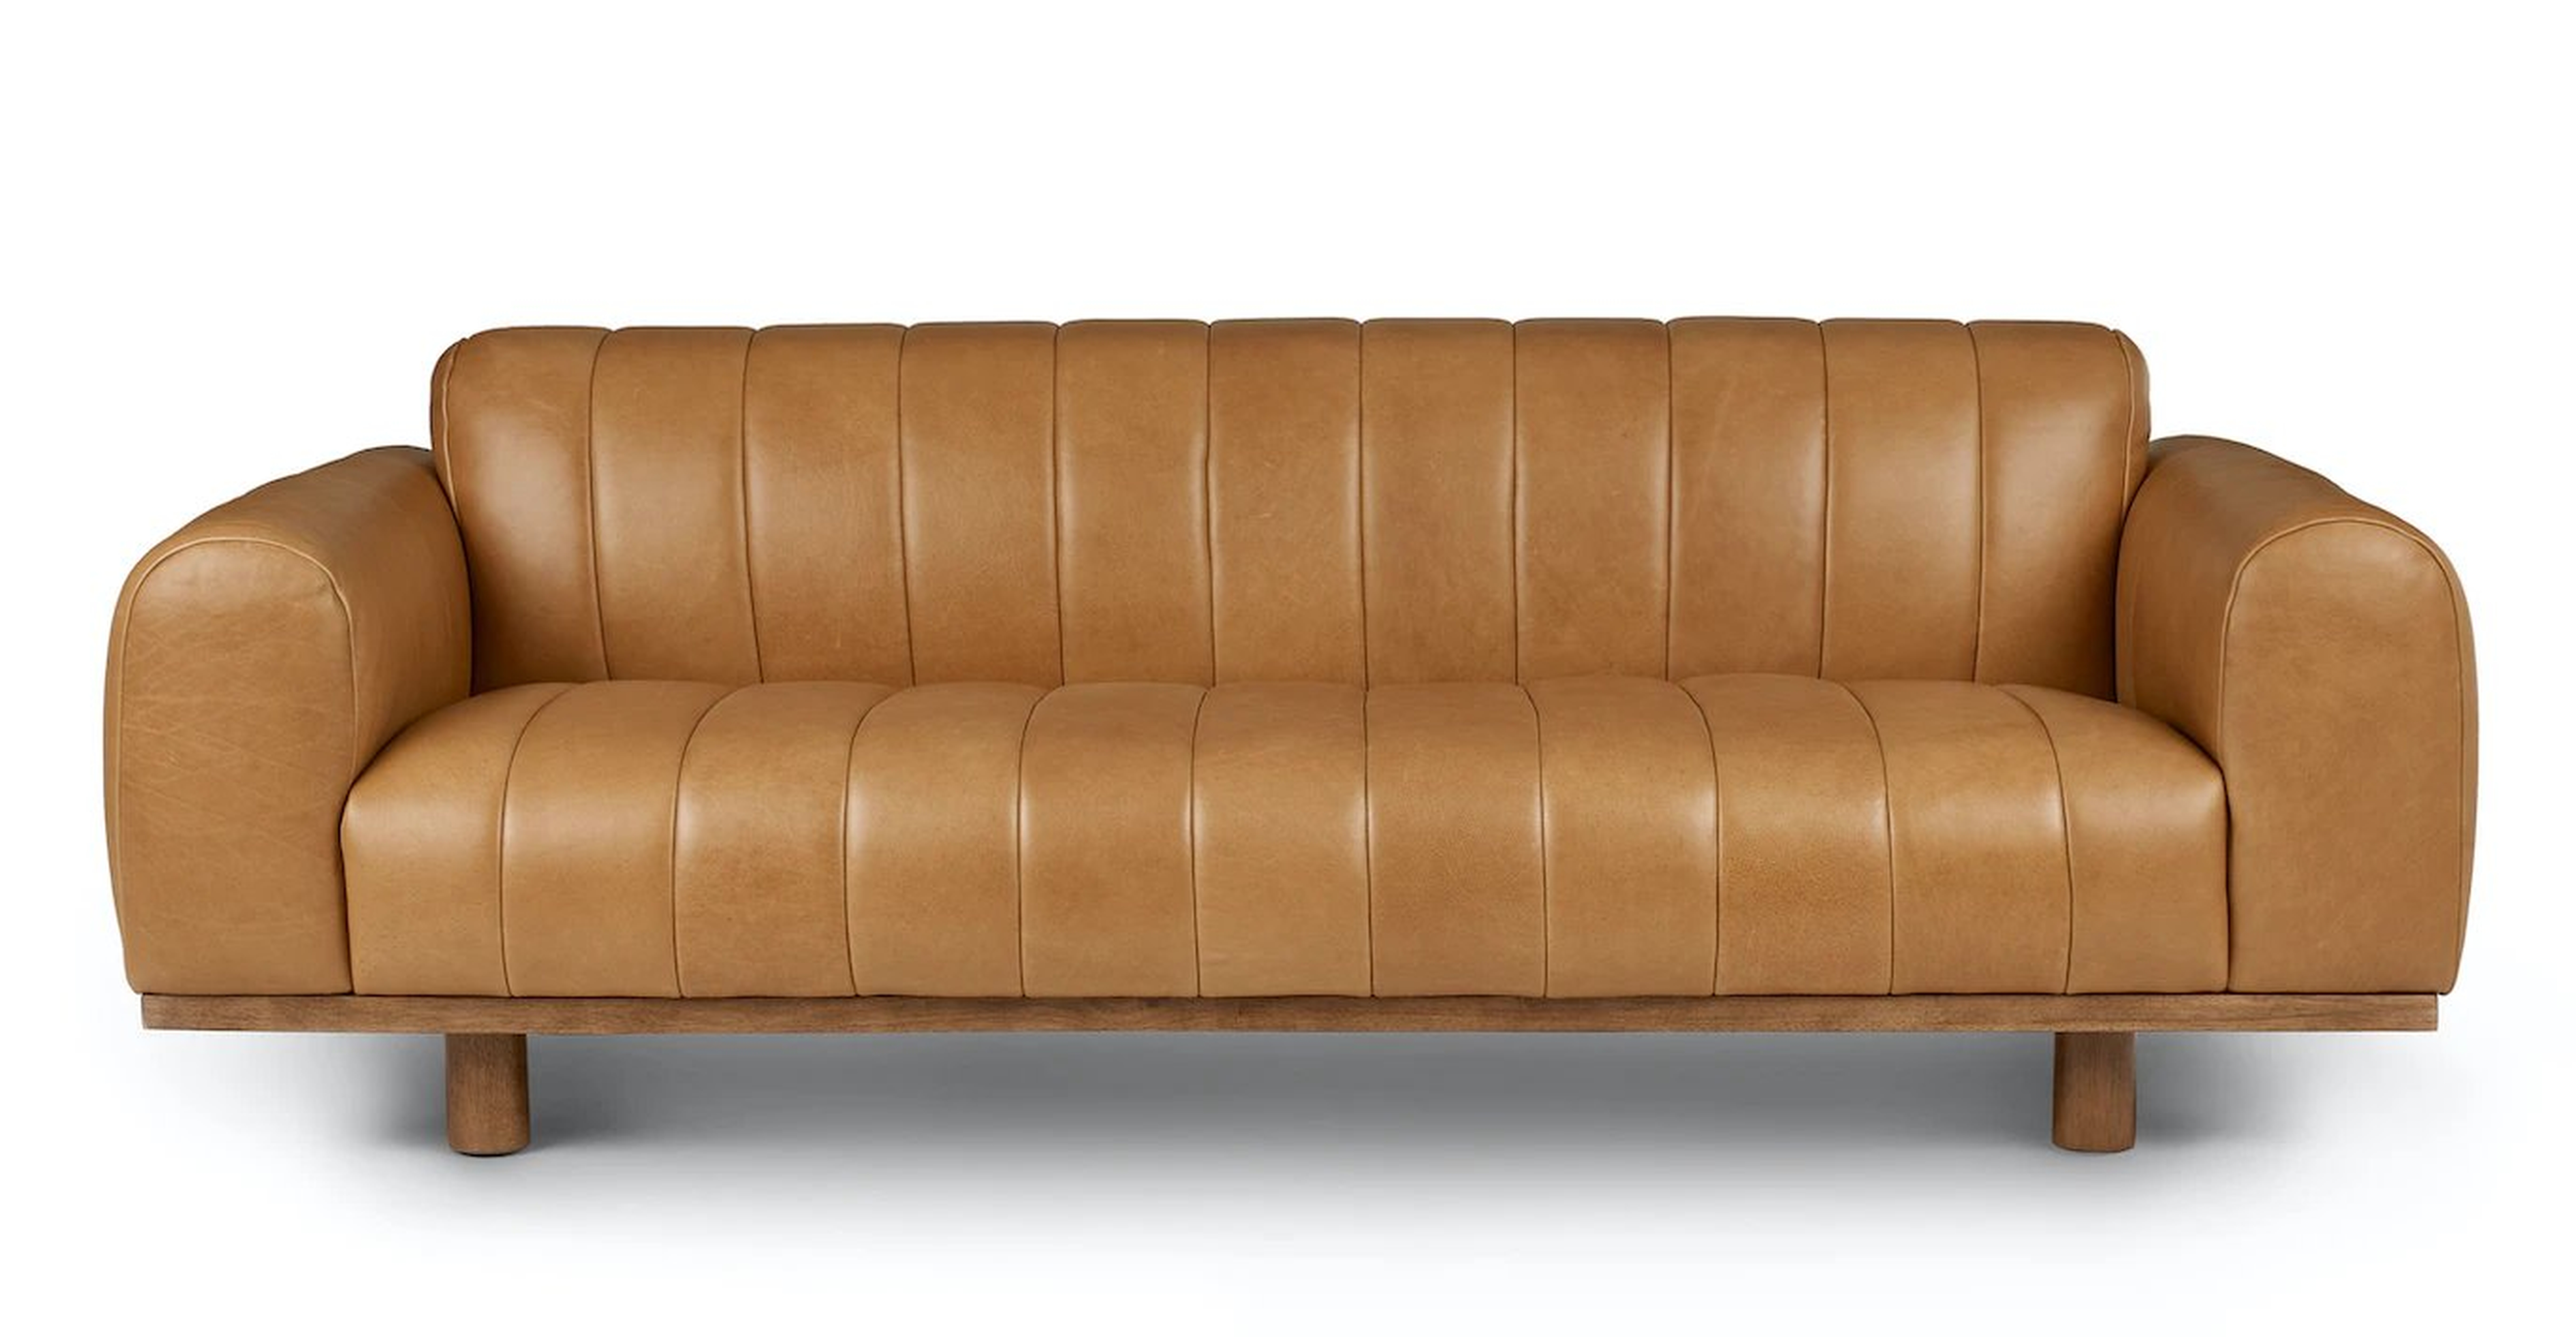 Texada 90.5" Tufted Leather Sofa - Taos Tan - Article